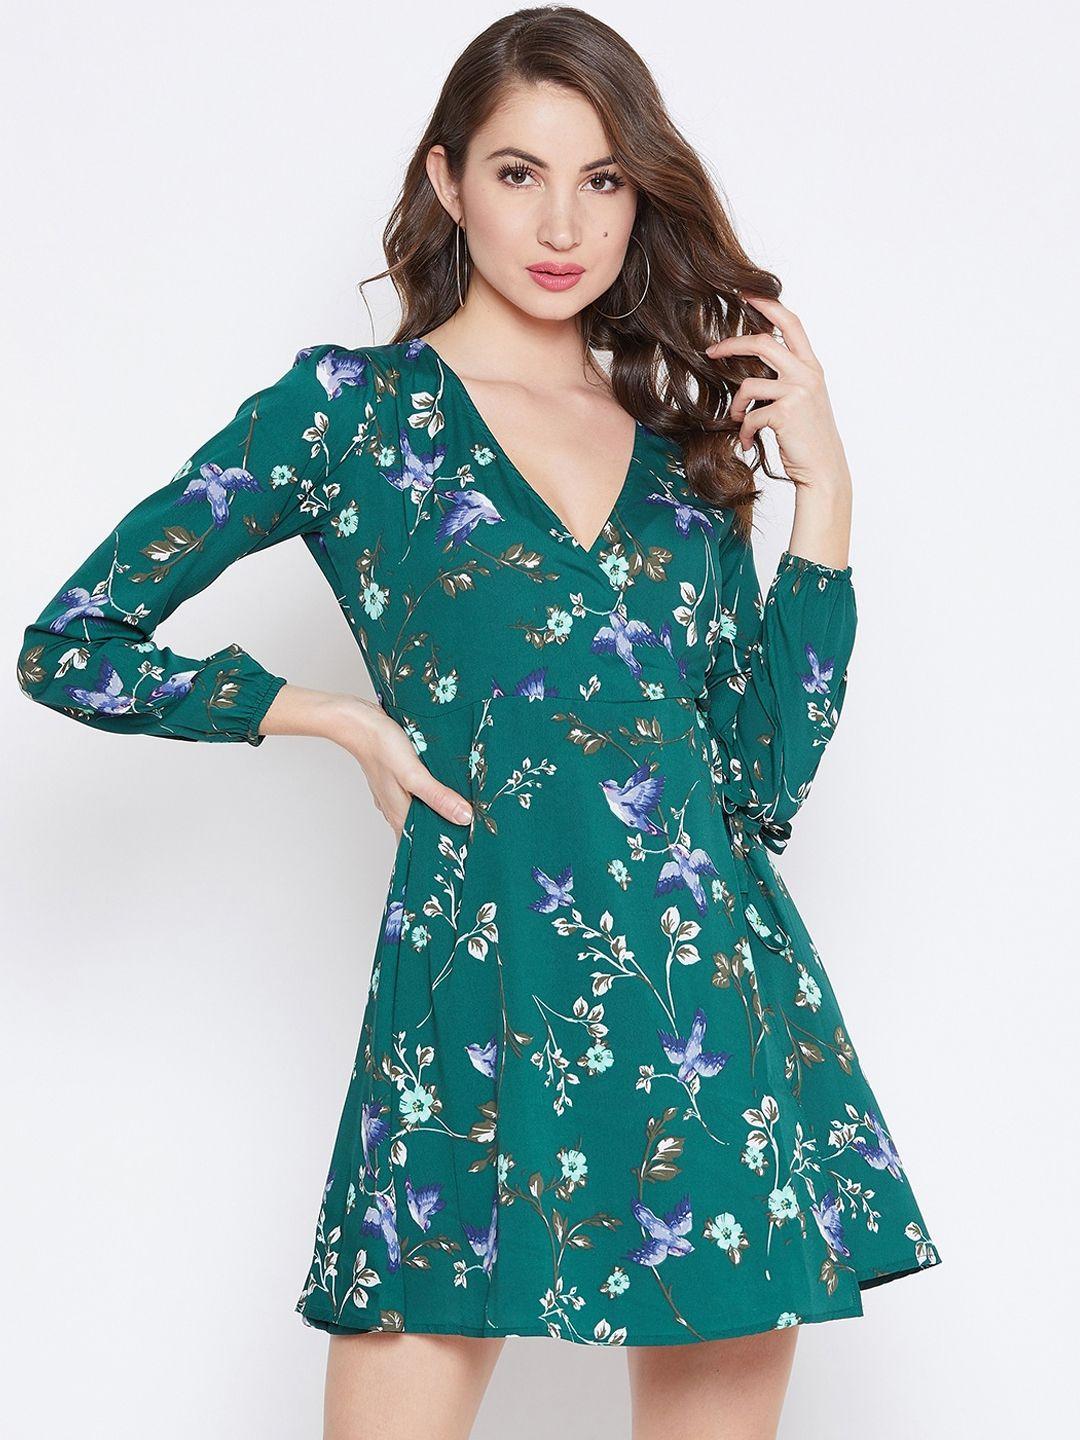 berrylush-green-floral-printed-wrap-dress